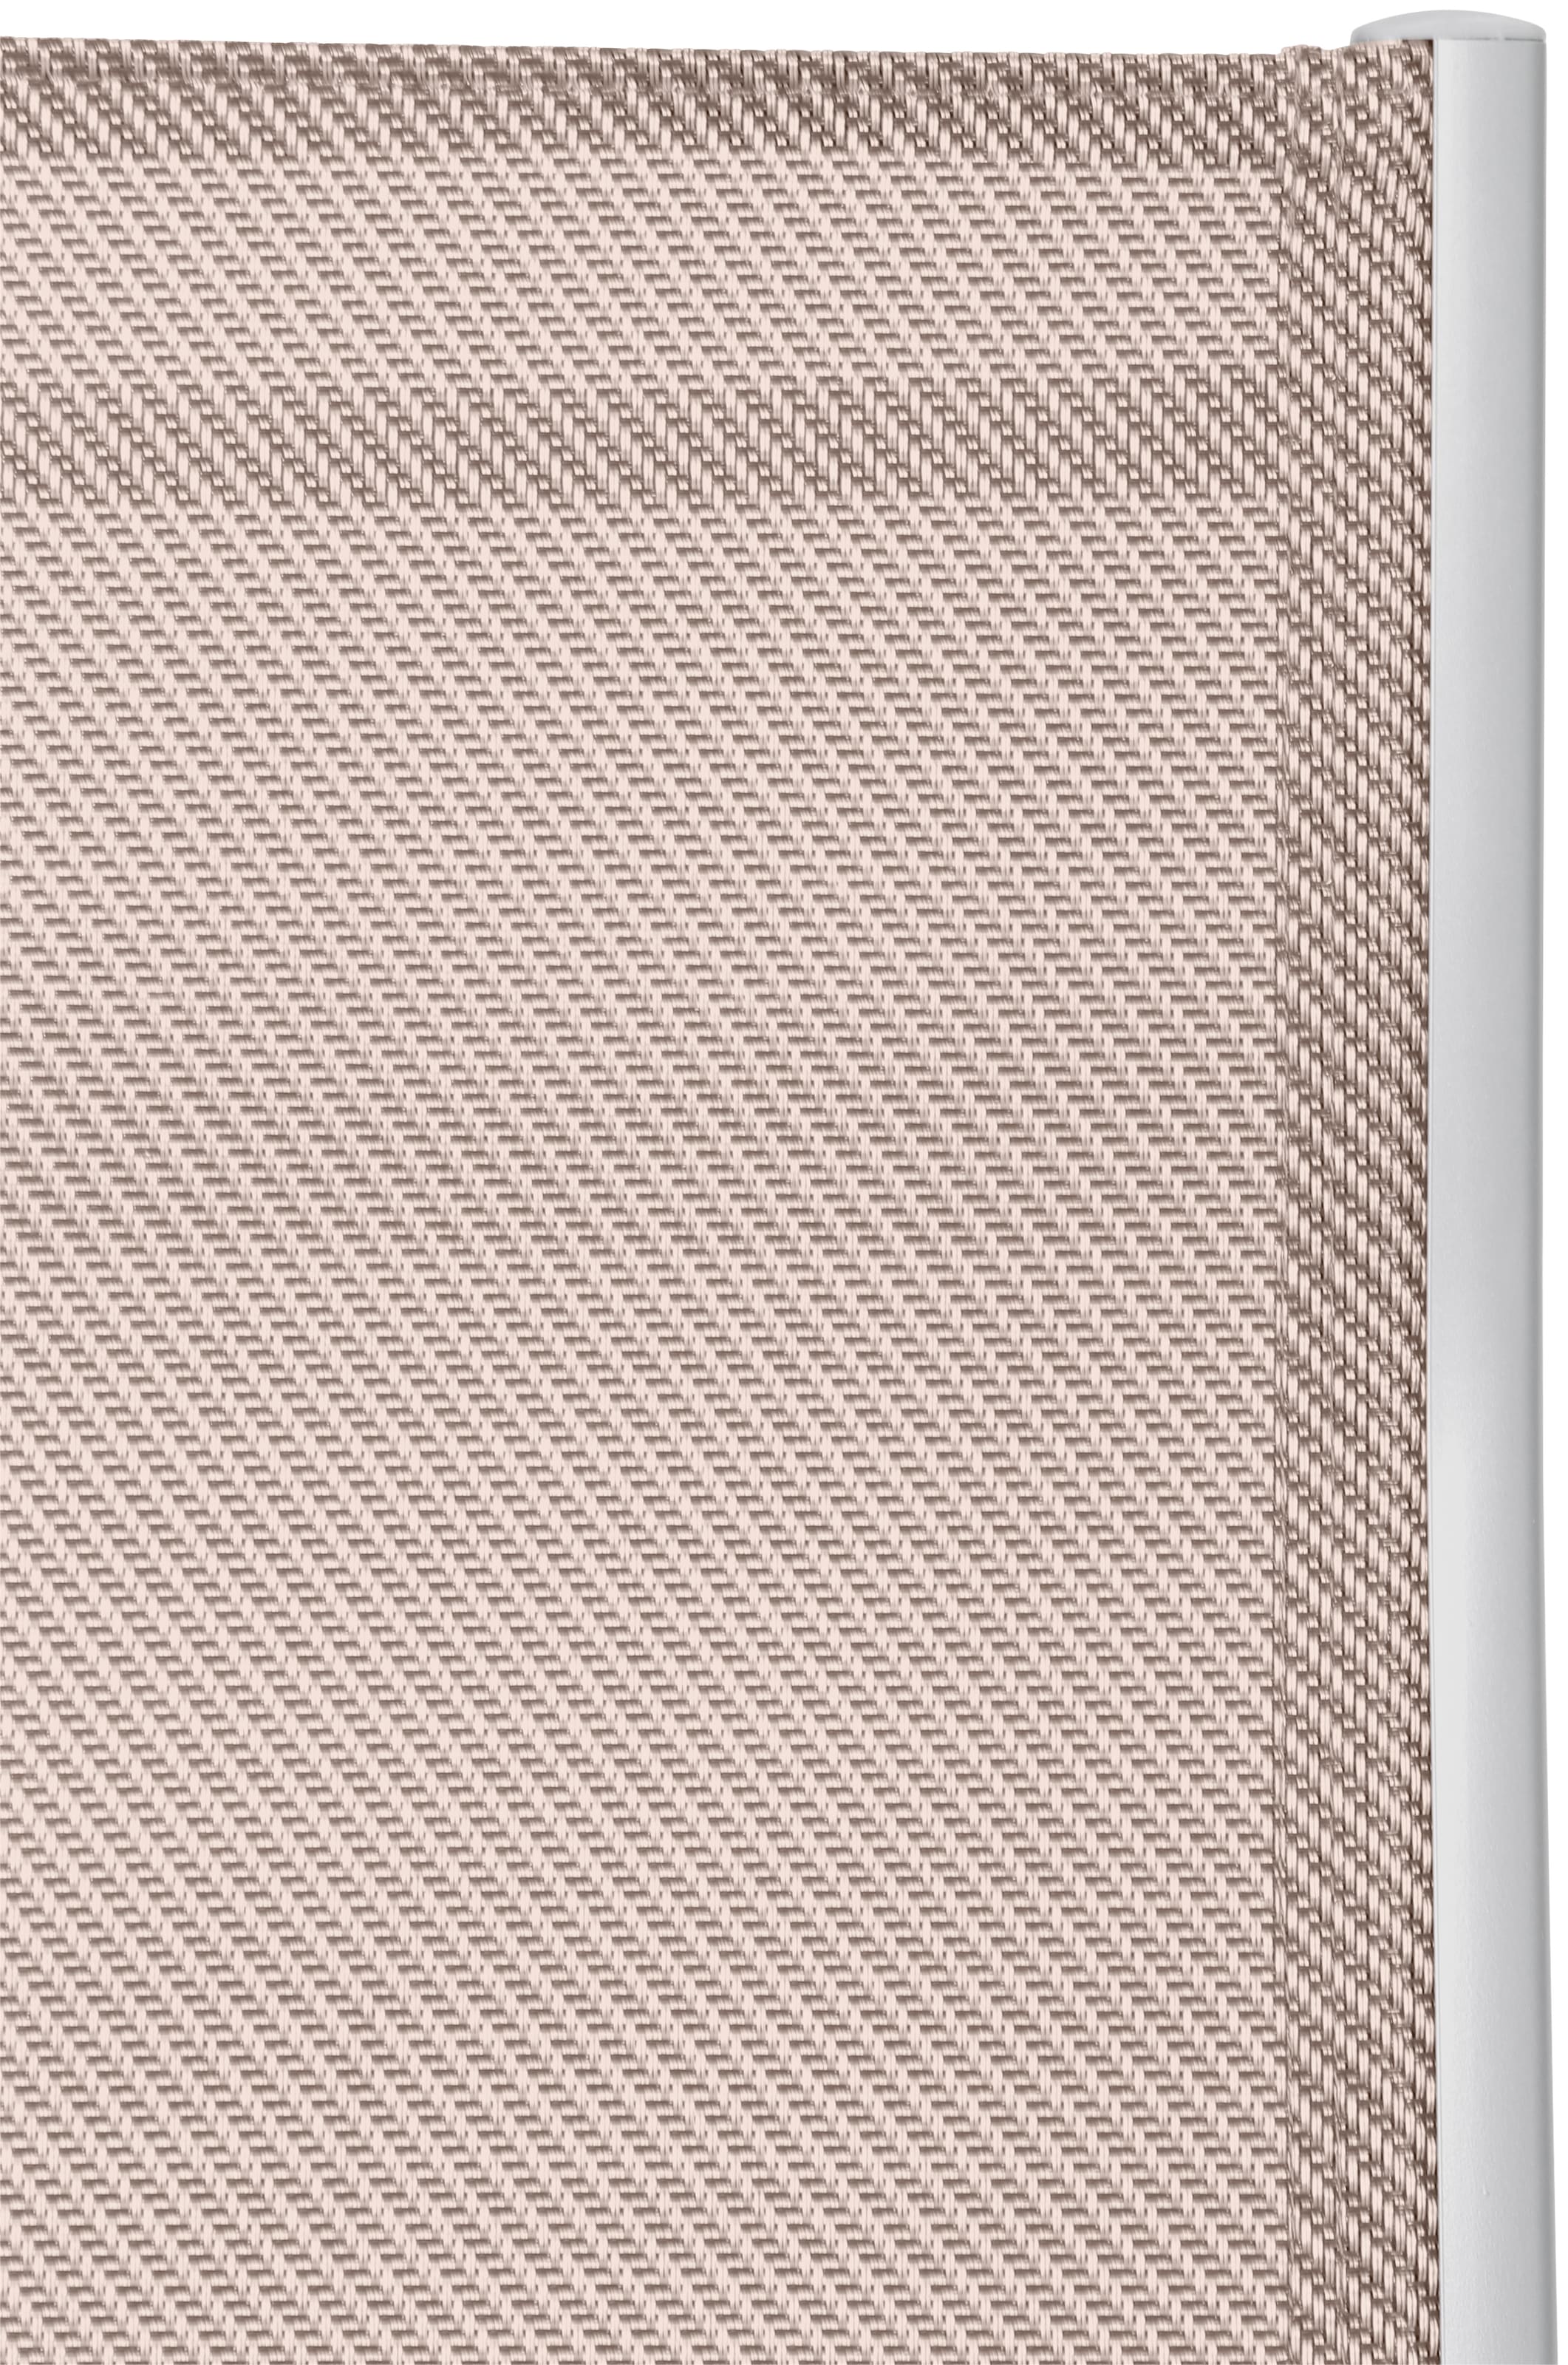 MERXX Garten-Essgruppe »Amalfi«, (5 tlg.), 4 Klappsessel, Tisch ausziehbar  90x120-180 cm, Alu/Textil online kaufen | mit 3 Jahren XXL Garantie